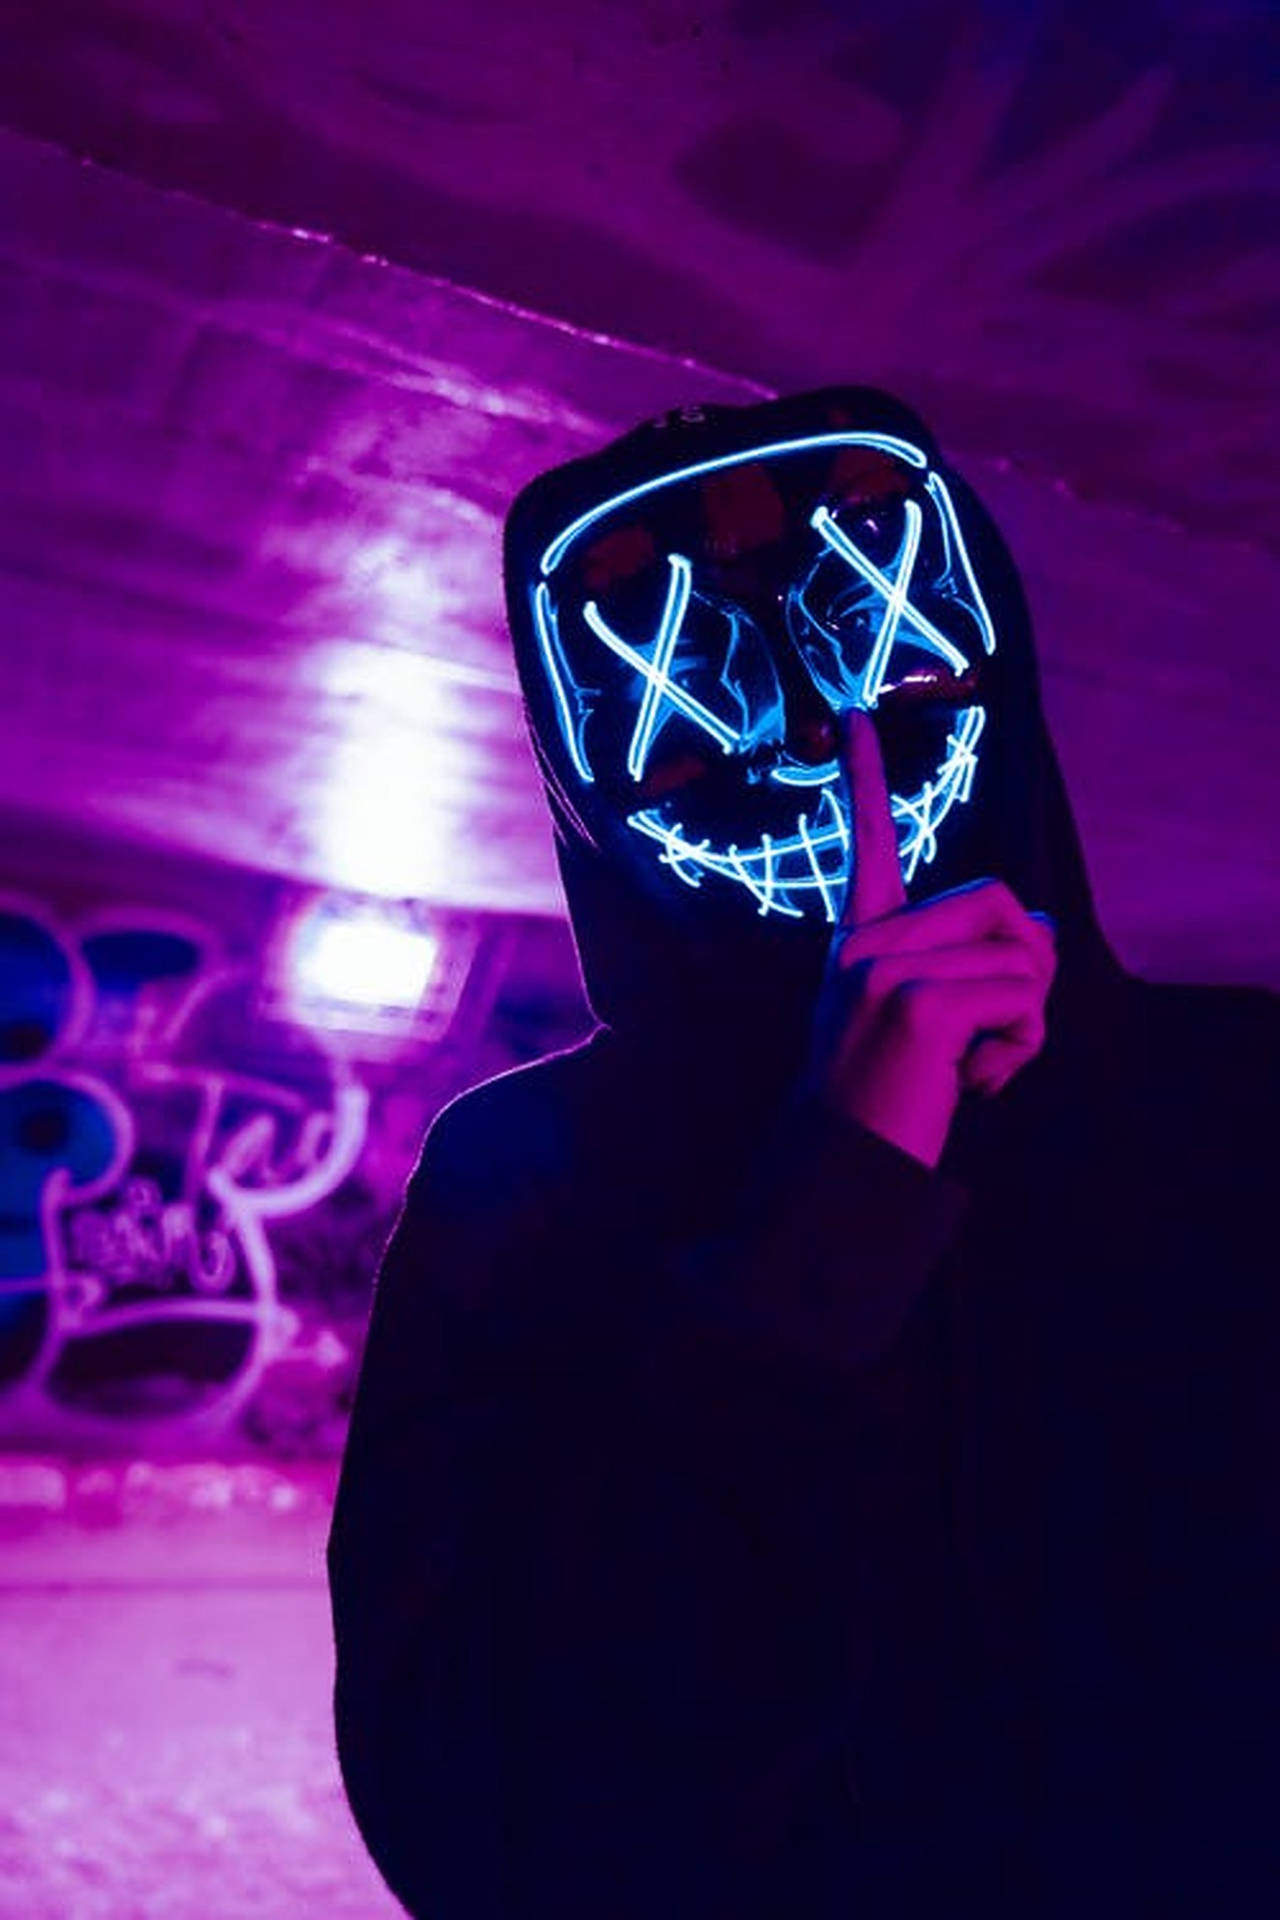 Futuristic Led Light Mask Background